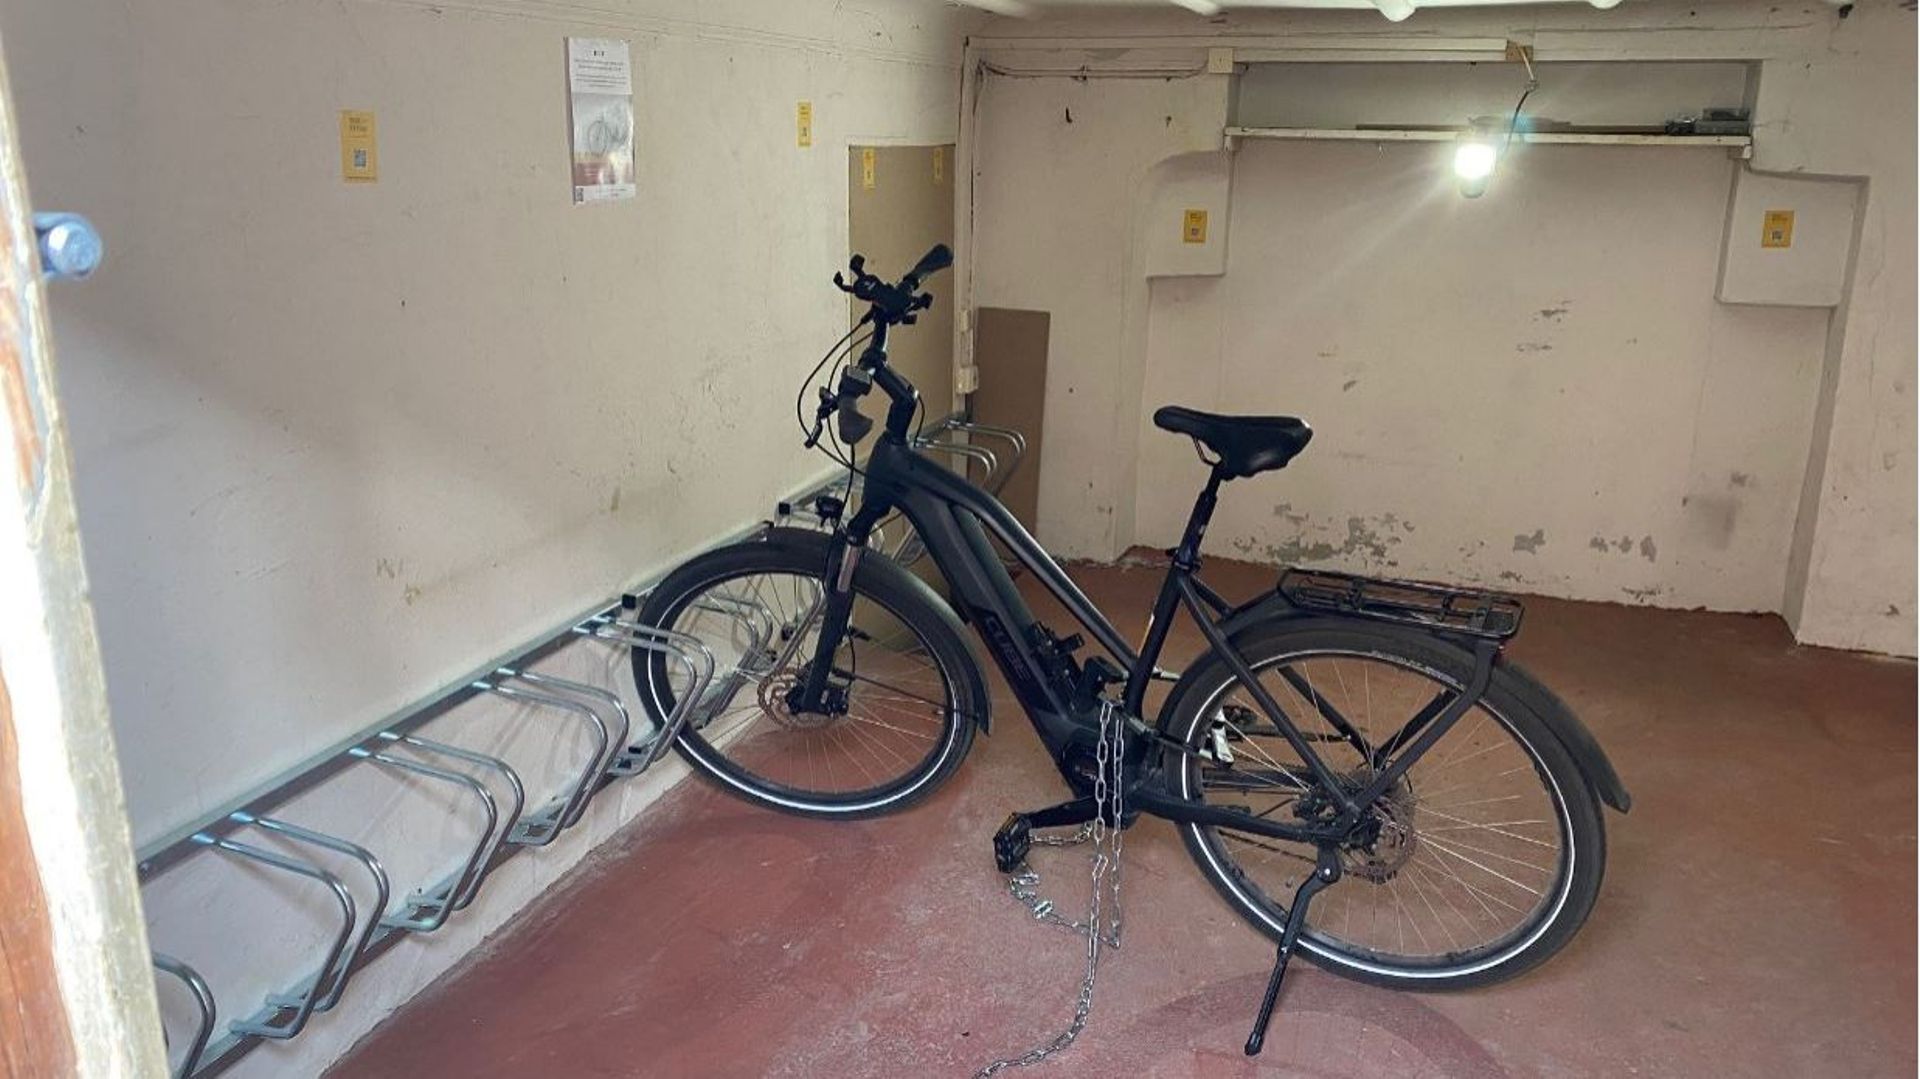 Le garage d'un particulier aménagé pour accueillir des vélos